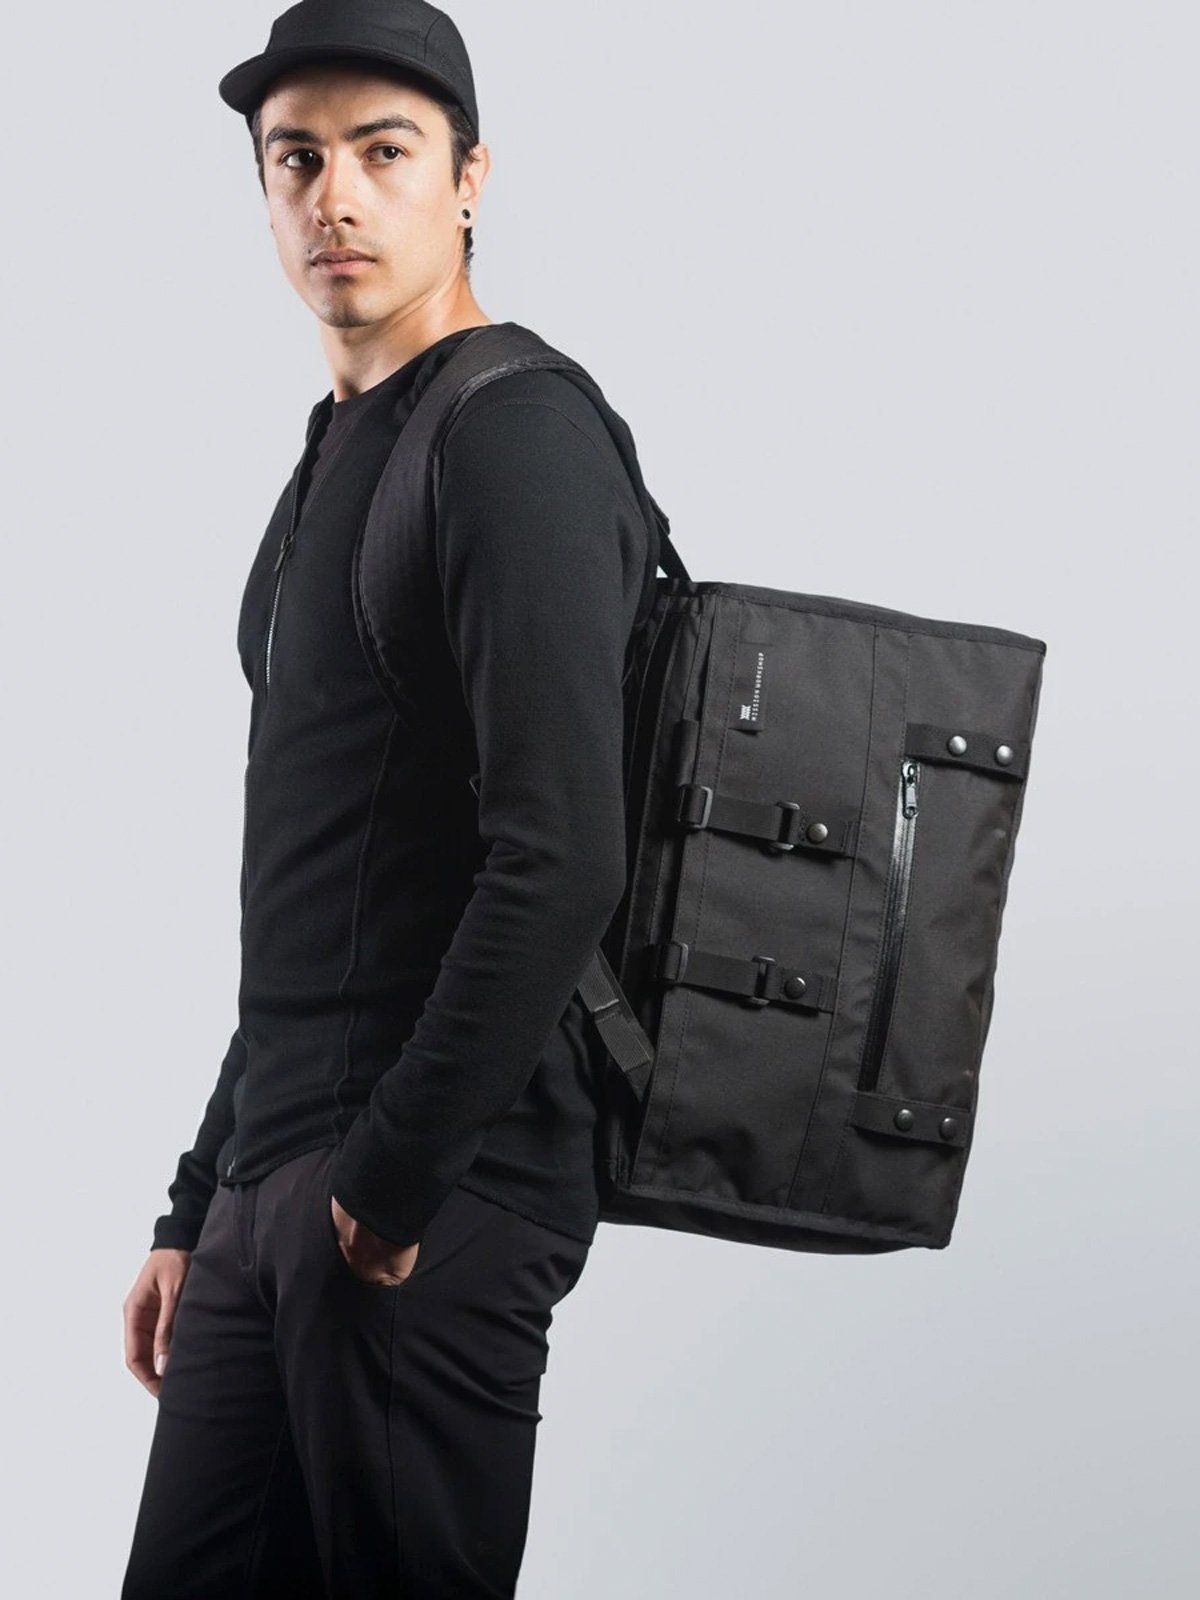 トランジット：Duffle Backpack Harness byMission Workshop - 耐候性バッグ＆テクニカルアパレル - サンフランシスコ＆ロサンゼルス - 耐久性に優れた作り - 永久保証